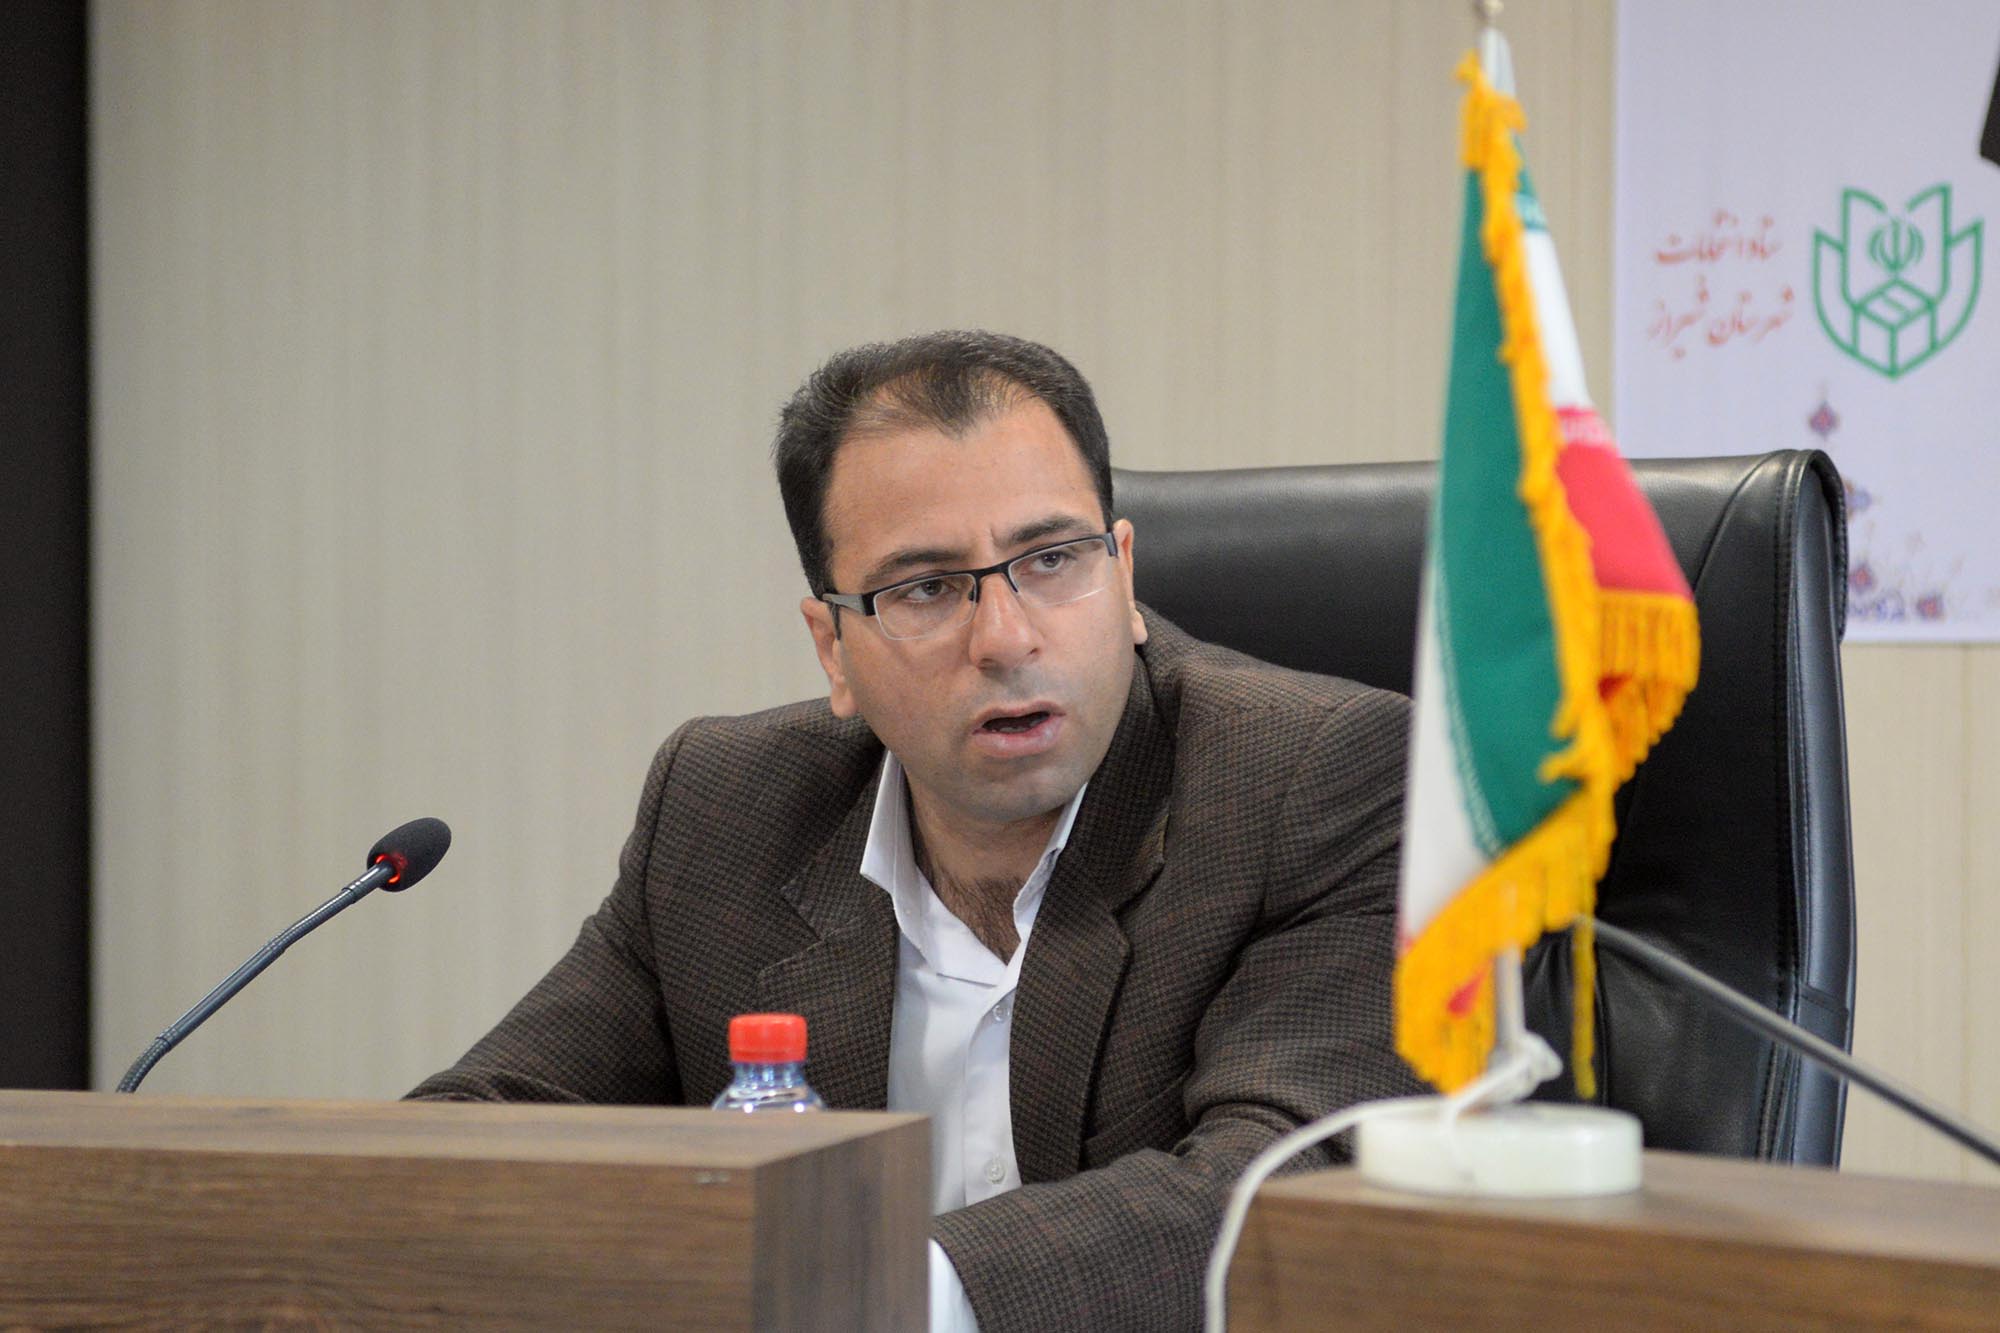 نشست خبری ستاد تسهیلات نوروزی در فرمانداری شیراز